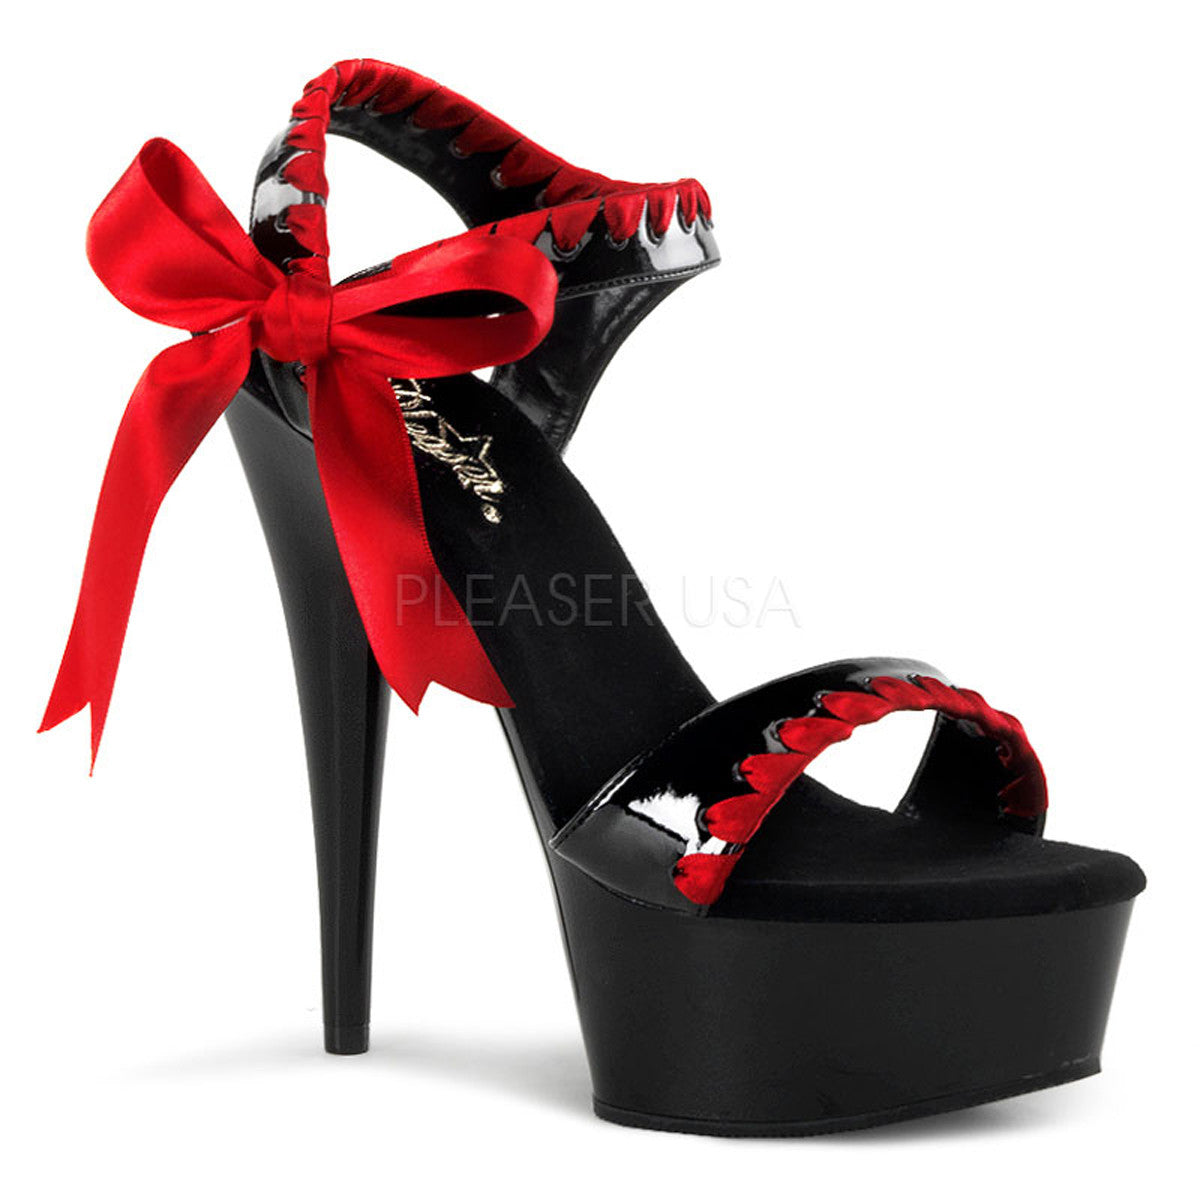 PLEASER DELIGHT-615 Black-Red-Black Ankle Strap Sandals - Shoecup.com